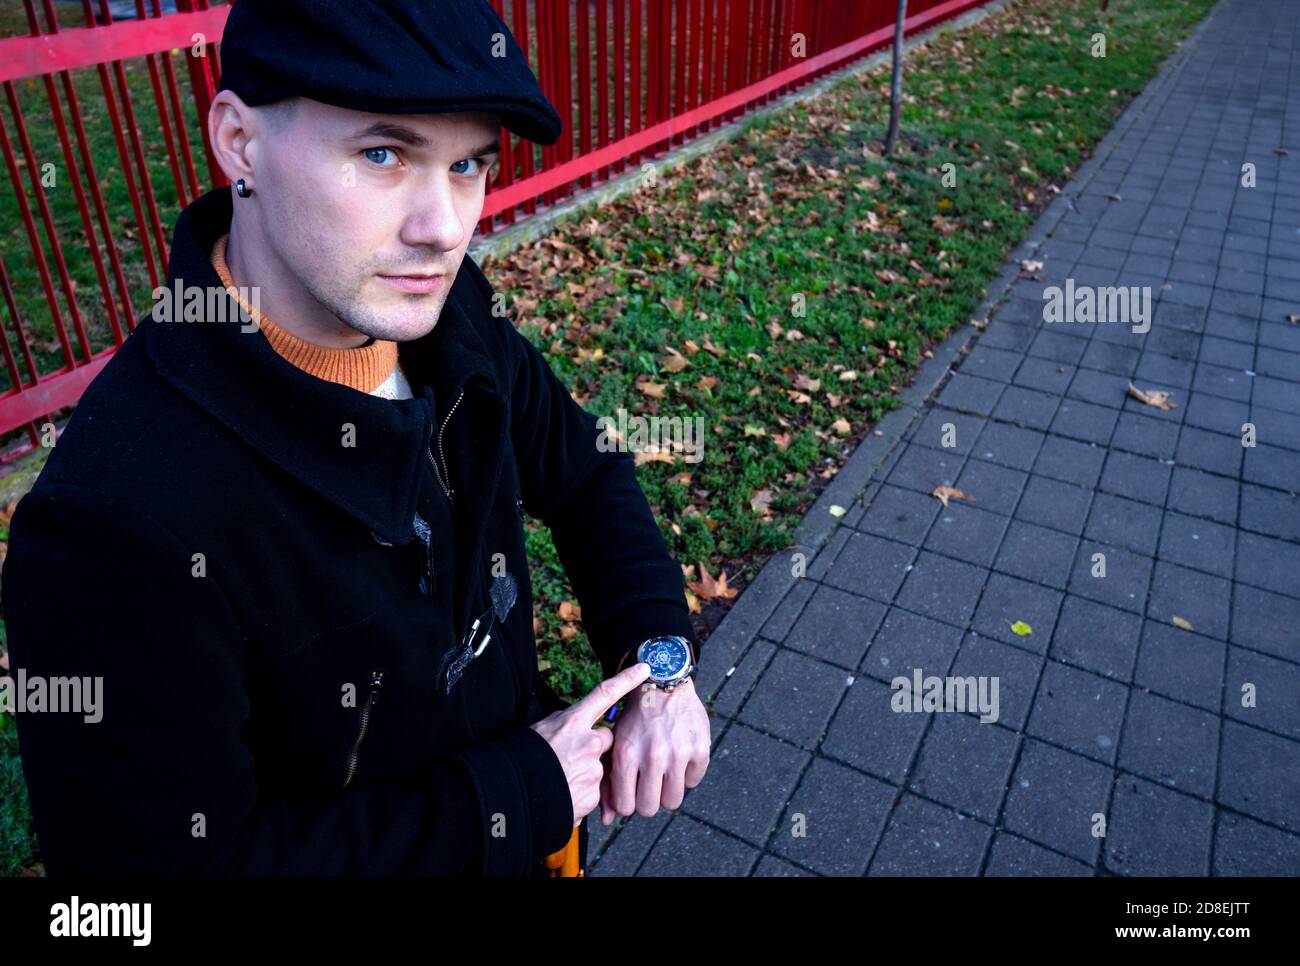 Ritratto di un giovane in cappotto nero, puntando impazientemente sul suo orologio da polso, aspettando una data e guardando arrabbiato alla macchina fotografica. Sei in ritardo, sbrigati! Foto Stock